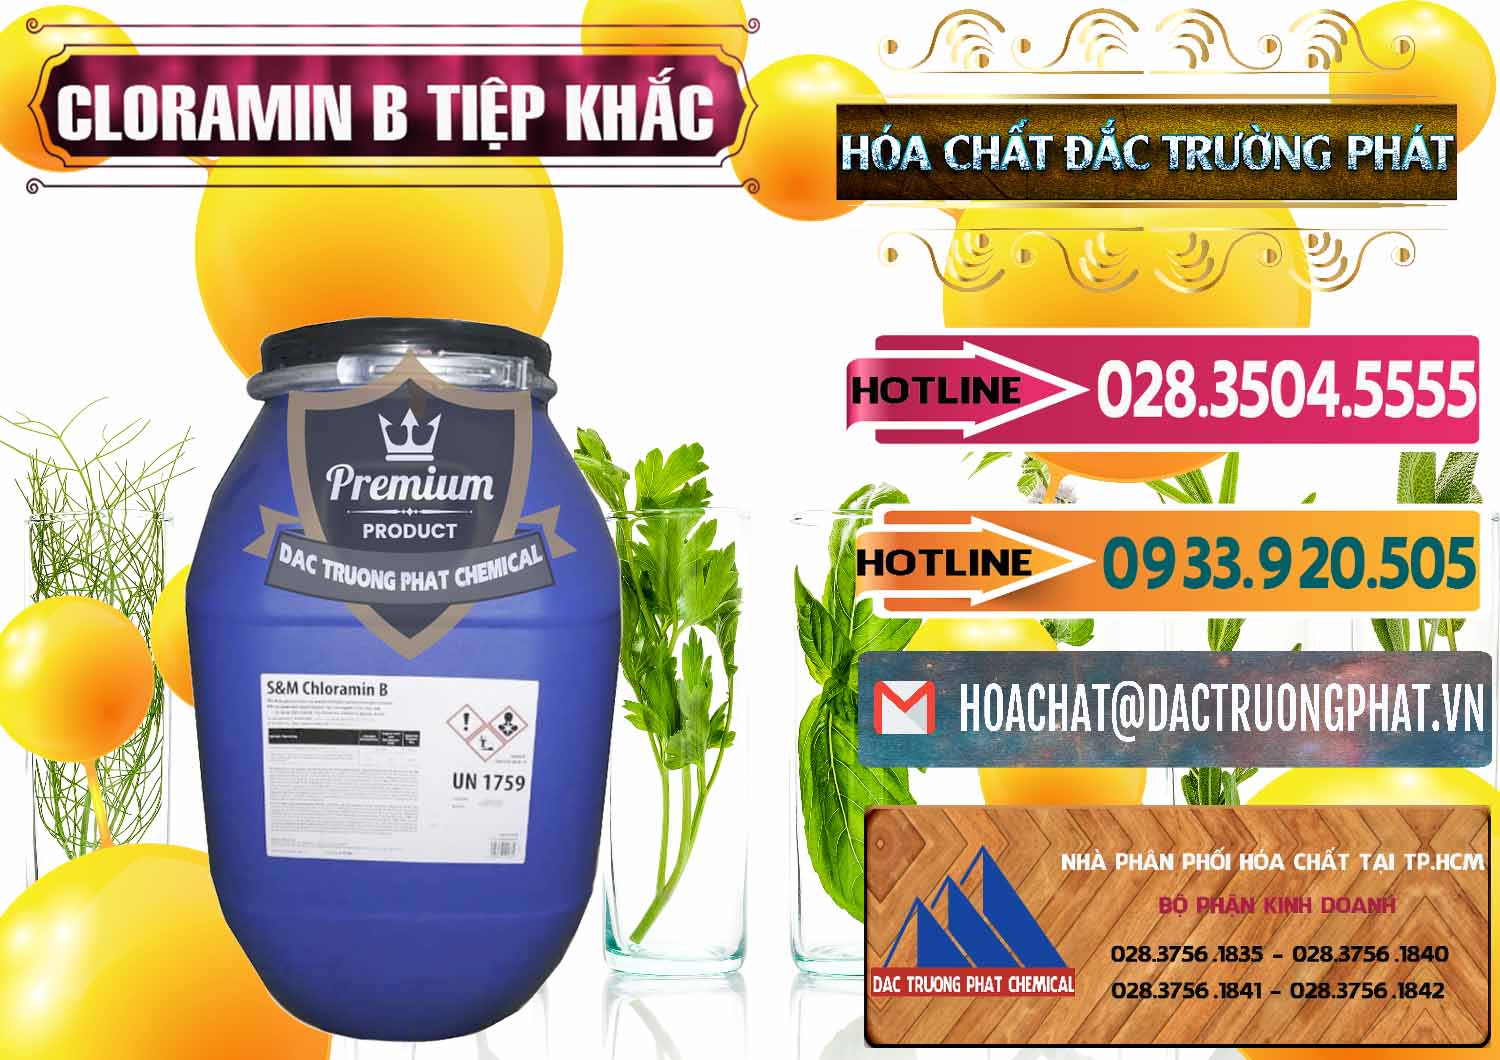 Nhà phân phối _ bán Cloramin B Cộng Hòa Séc Tiệp Khắc Czech Republic - 0299 - Công ty kinh doanh - cung cấp hóa chất tại TP.HCM - dactruongphat.vn